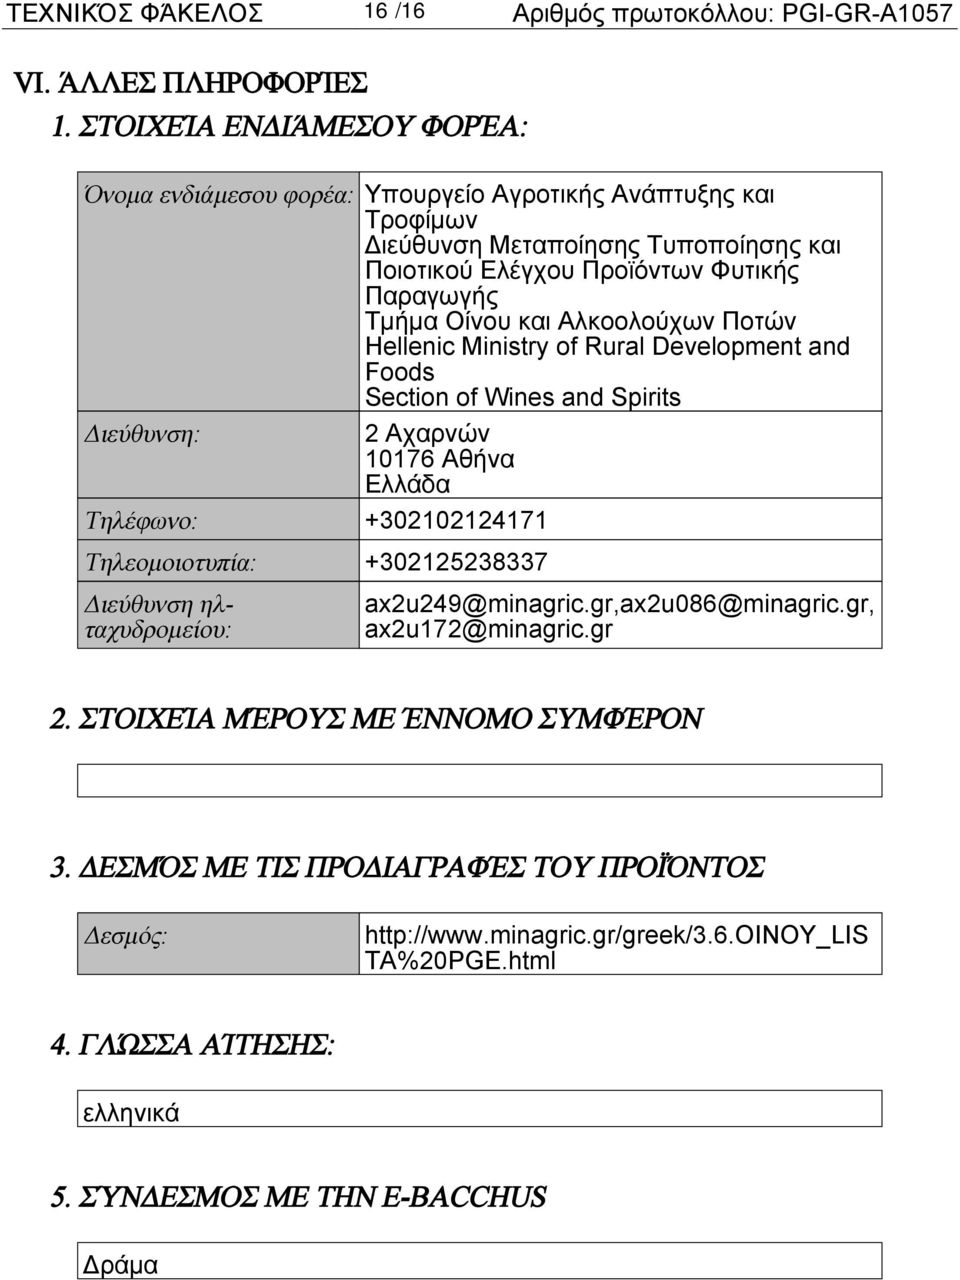 και Αλκοολούχων Ποτών Hellenic Ministry of Rural Development and Foods Section of Wines and Spirits Διεύθυνση: 2 Αχαρνών 10176 Αθήνα Τηλέφωνο: +302102124171 Τηλεομοιοτυπία: +302125238337